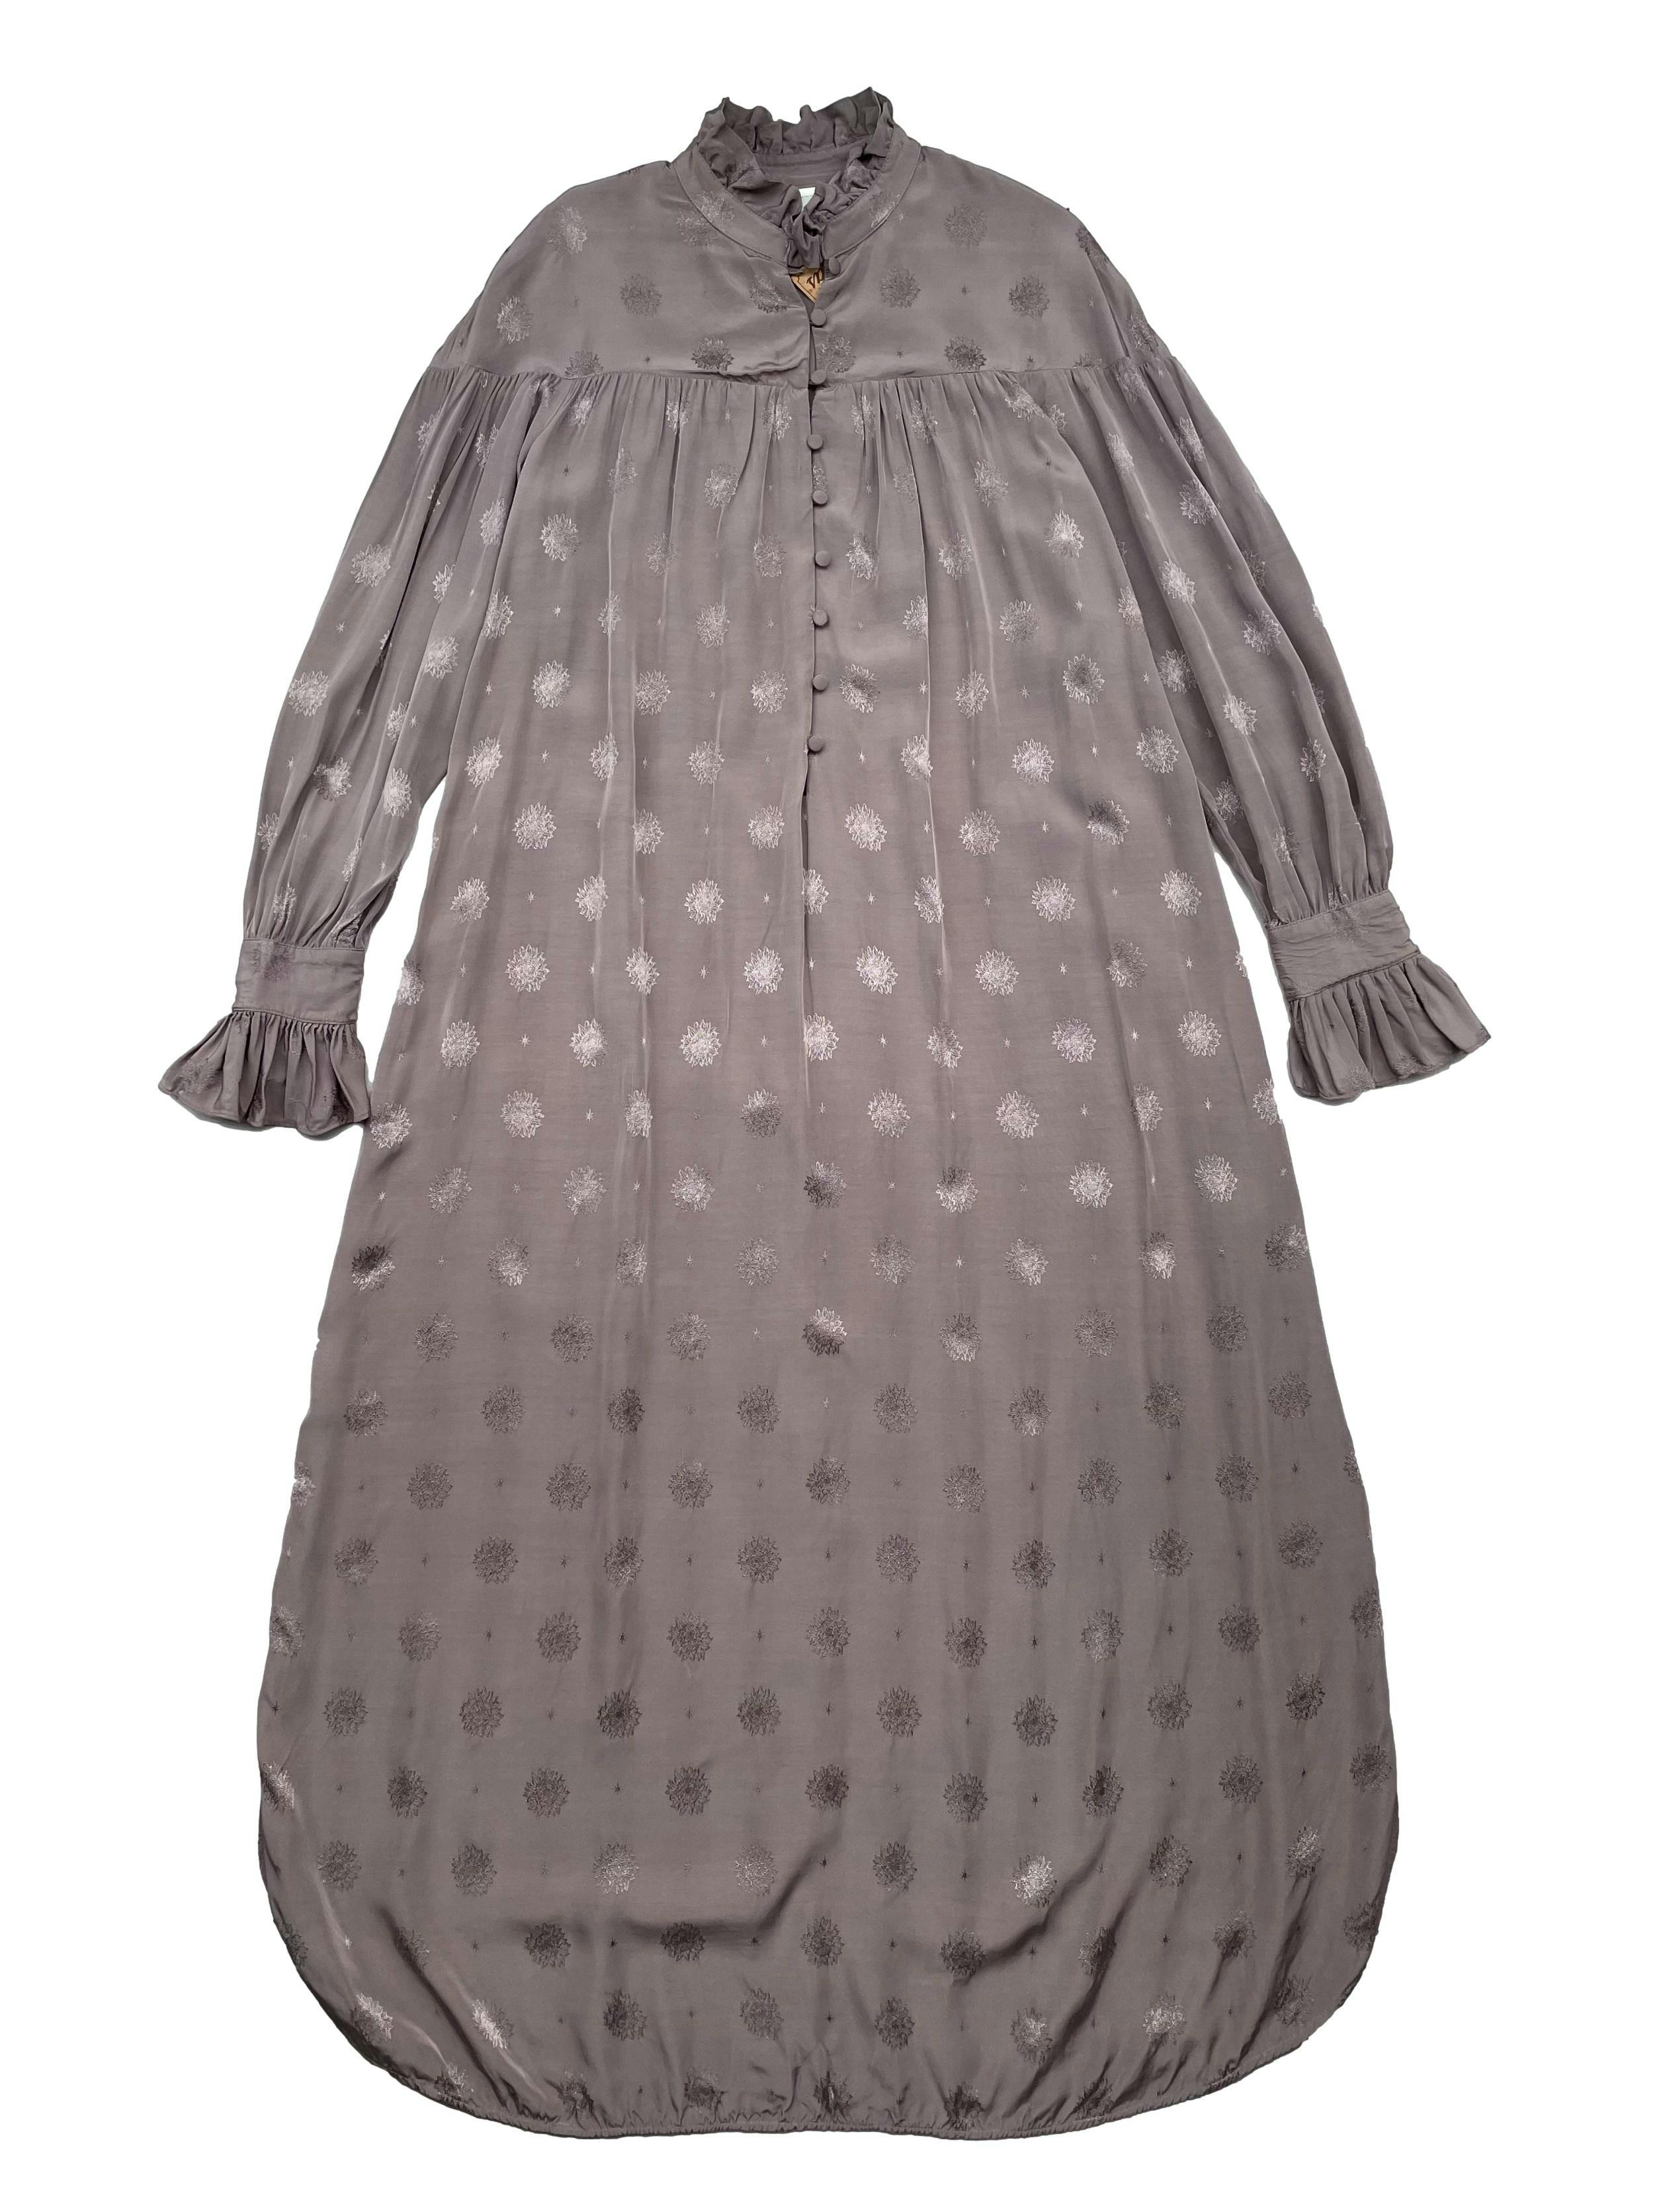 Vestido túnica Sandra Mansour x H&M, tela viscosa fluida con brocado al tono, botones forrados en el pecho y puños, aberturas laterales en la basta. Busto 110cm Largo 130cm